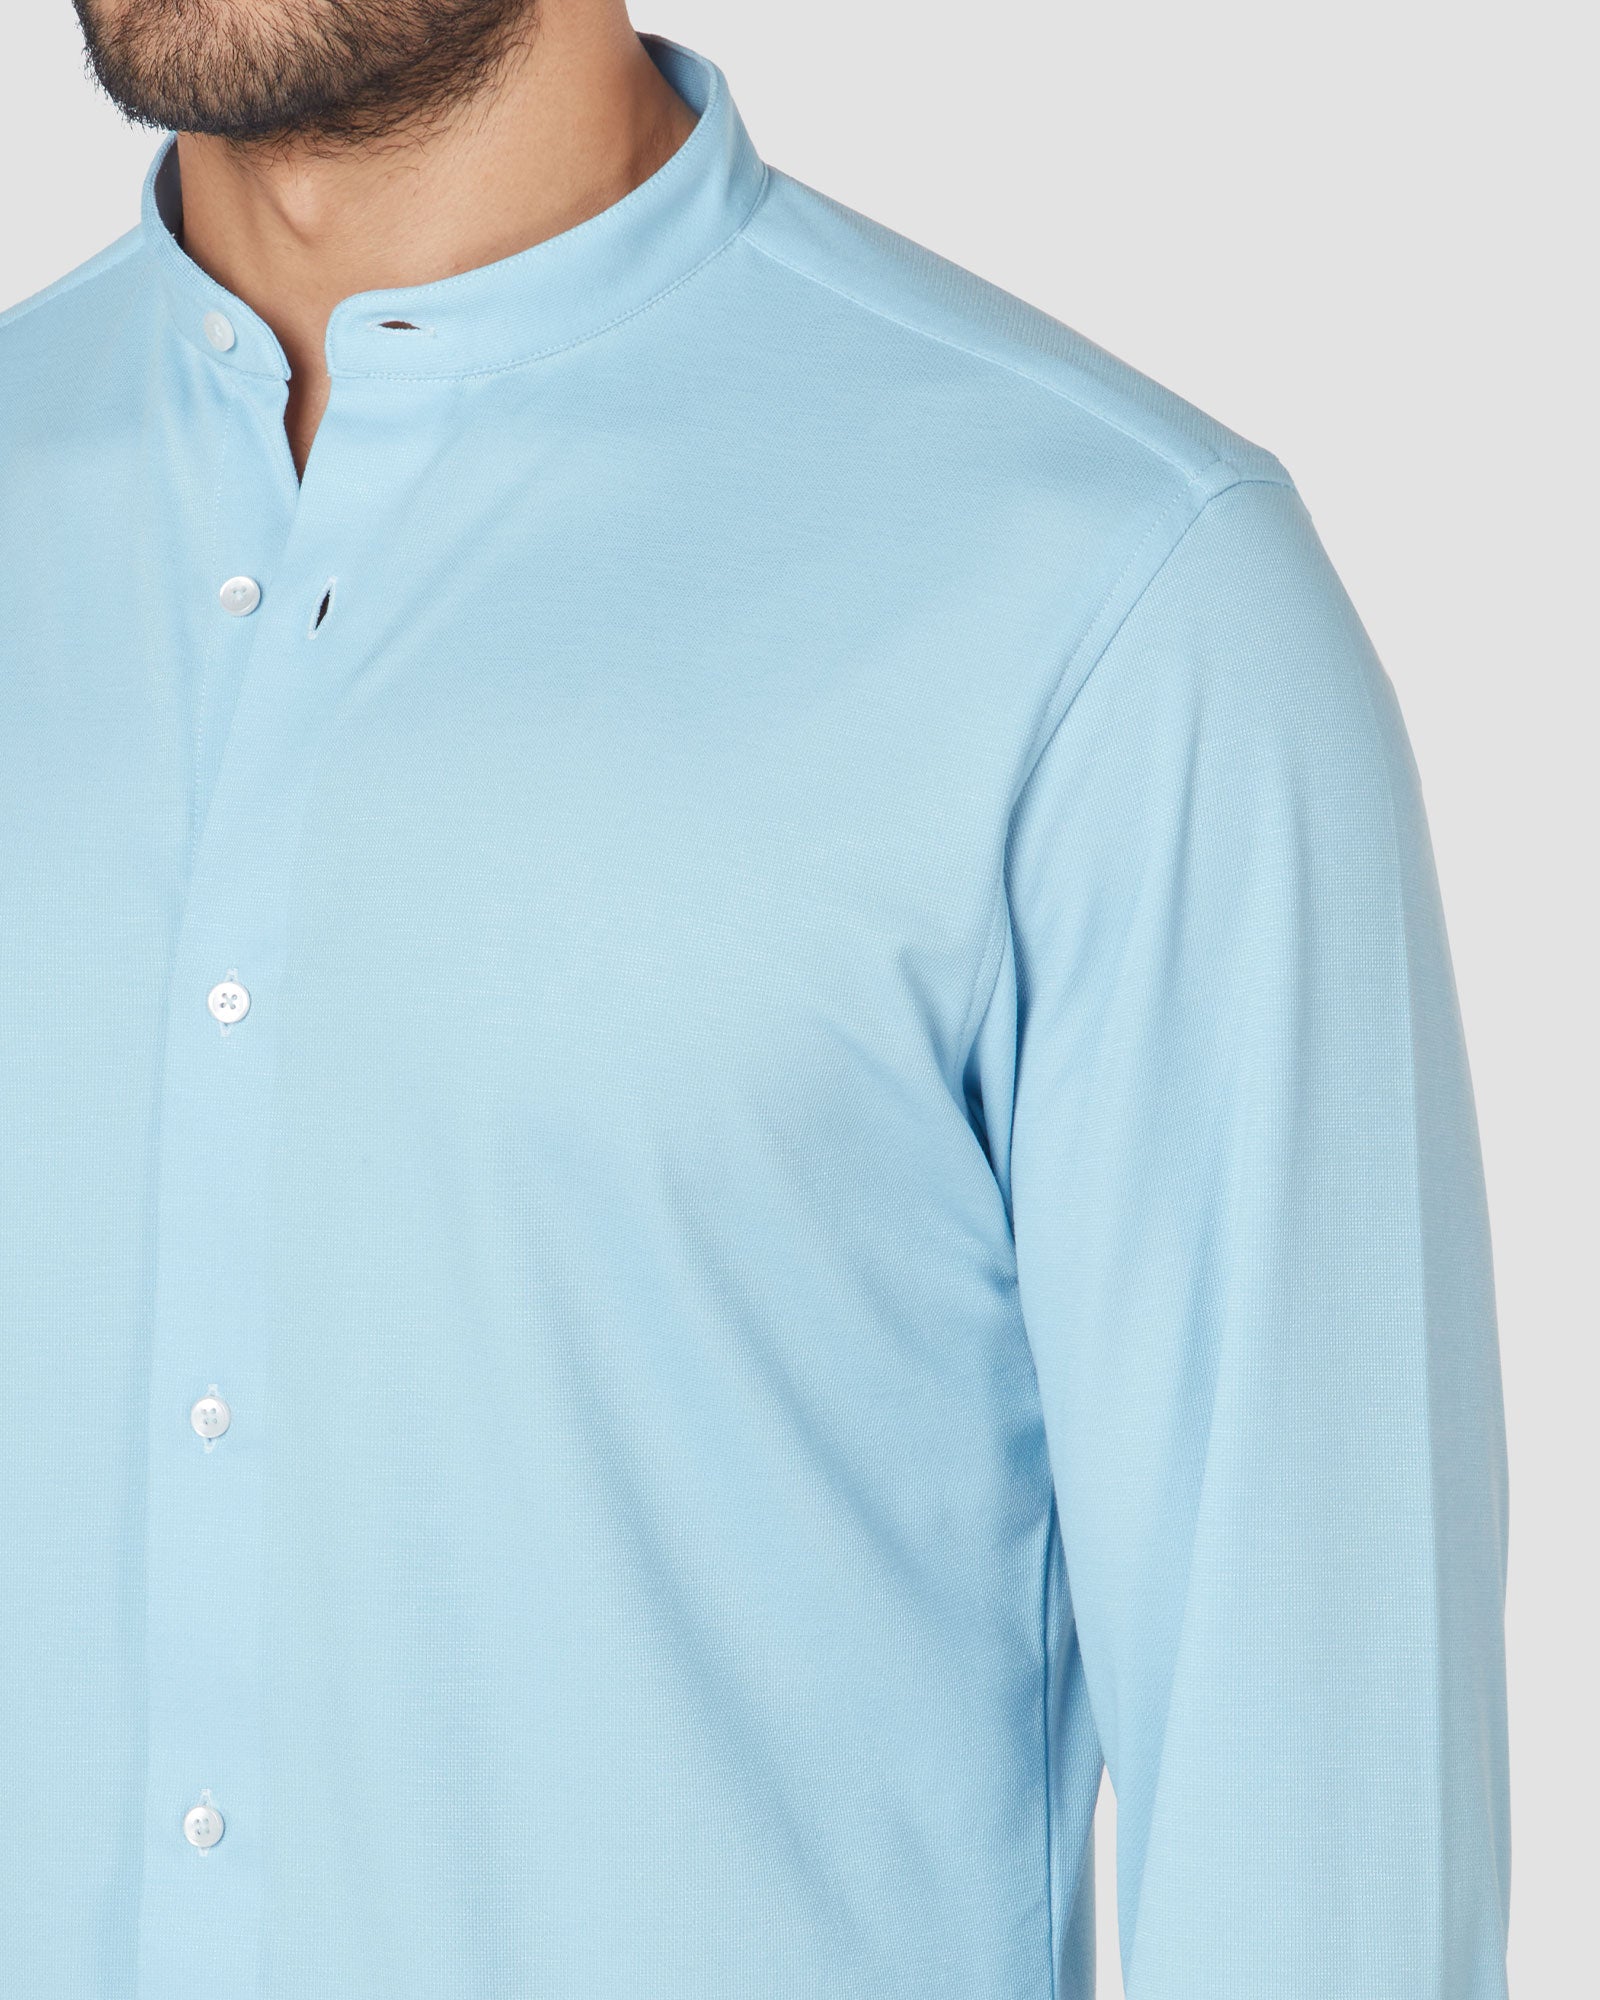 Bombay Shirt Company - Papagoite Knit Shirt